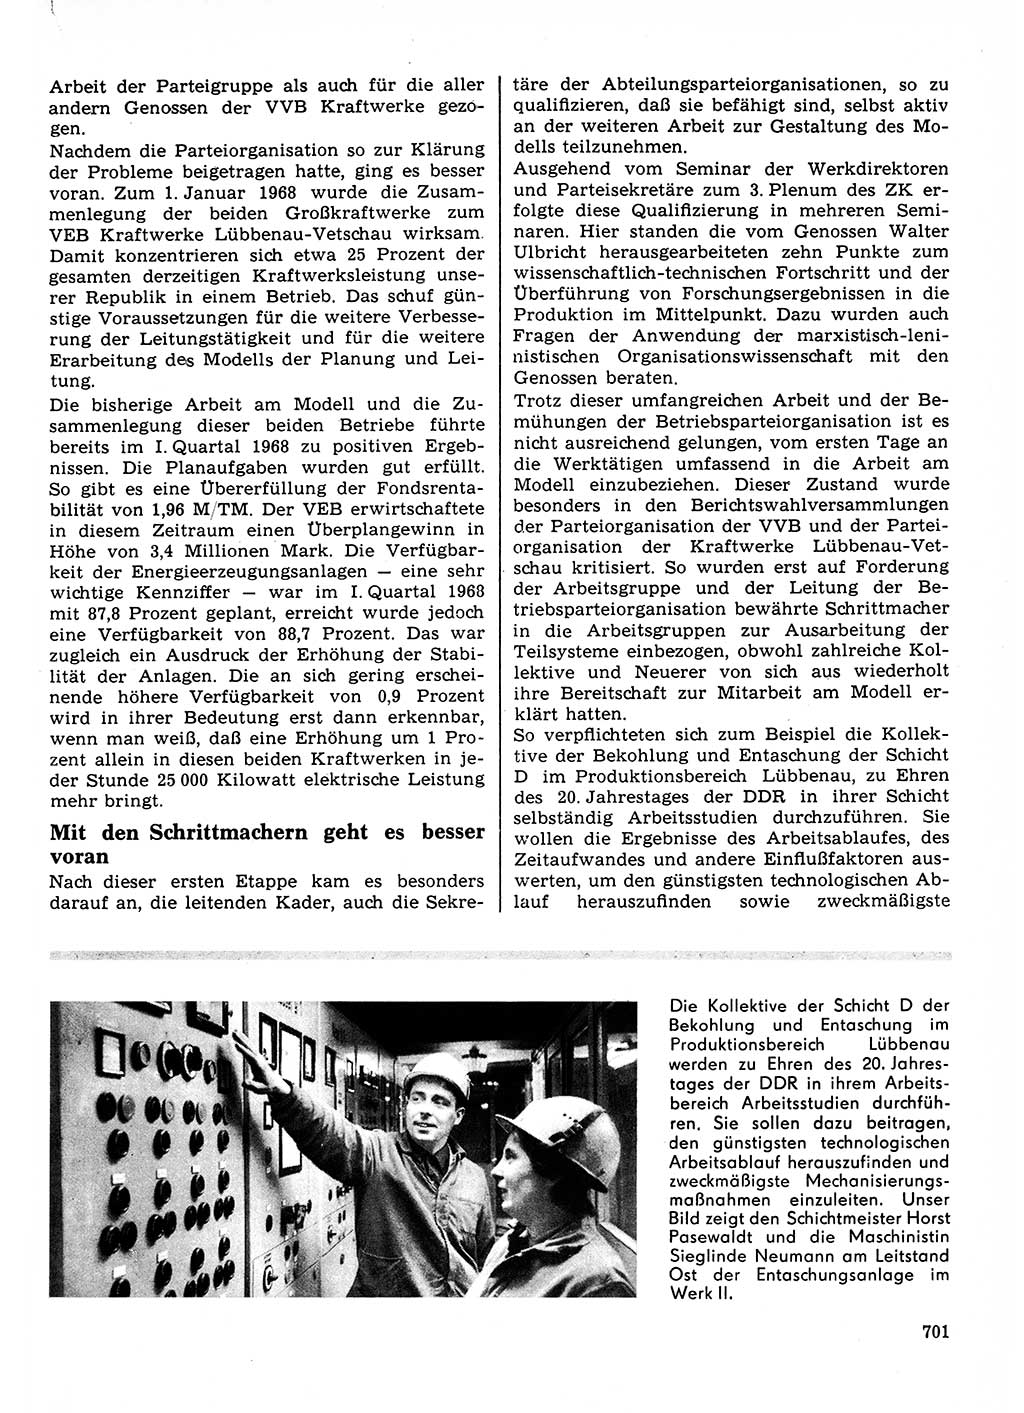 Neuer Weg (NW), Organ des Zentralkomitees (ZK) der SED (Sozialistische Einheitspartei Deutschlands) für Fragen des Parteilebens, 23. Jahrgang [Deutsche Demokratische Republik (DDR)] 1968, Seite 701 (NW ZK SED DDR 1968, S. 701)